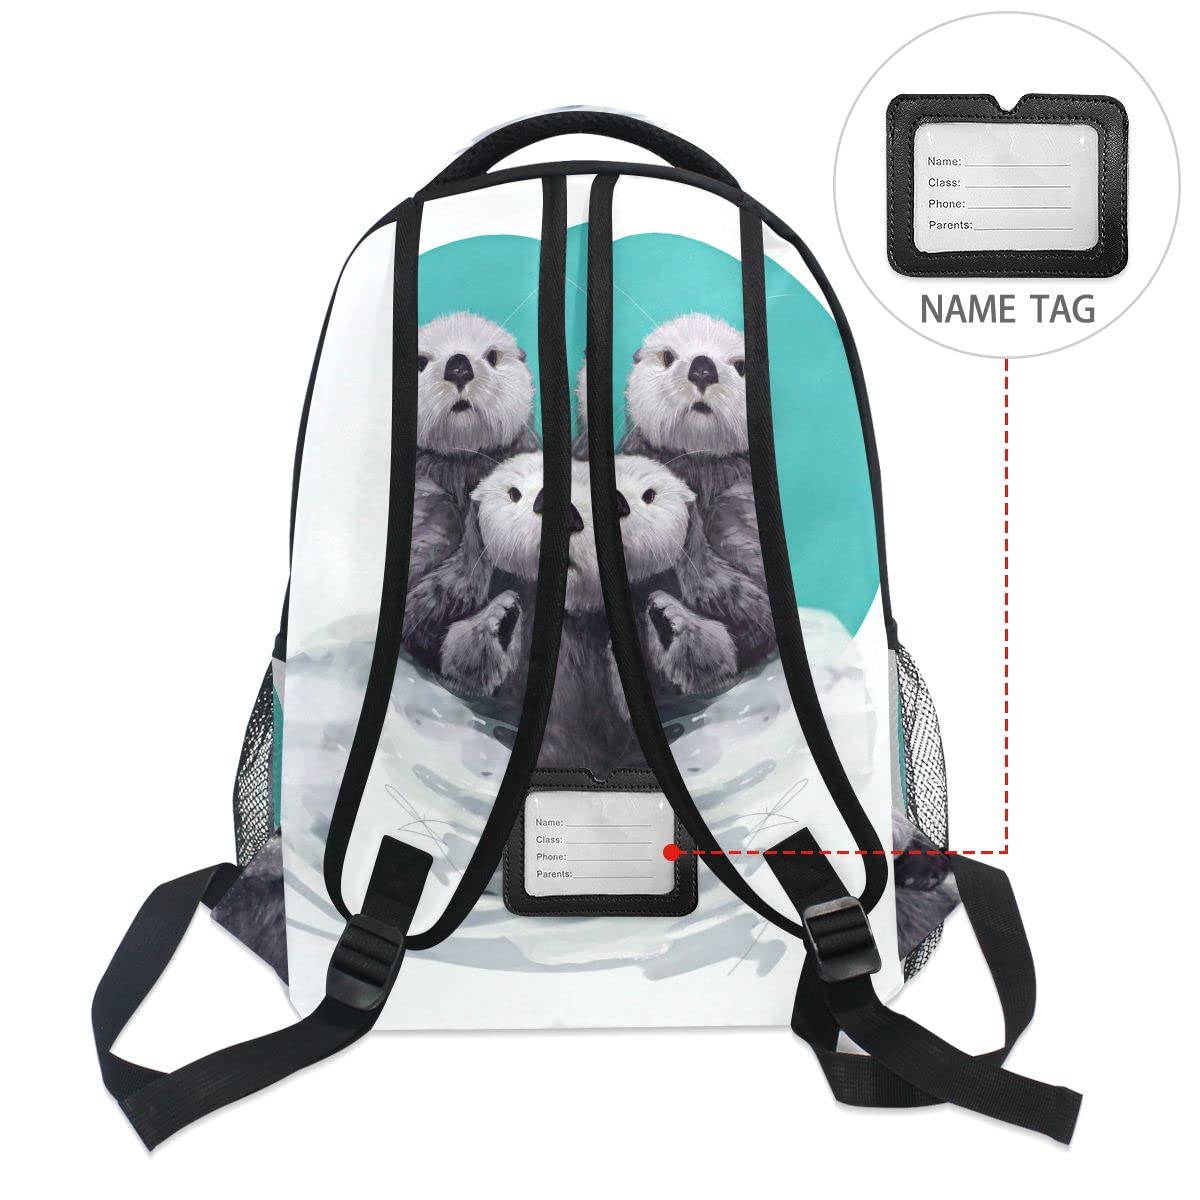 Fisyme Cute Sea Otter Backpack Laptop Bag Daypack Travel Hiking School Backpacks for Men Women Kids Girls Boys